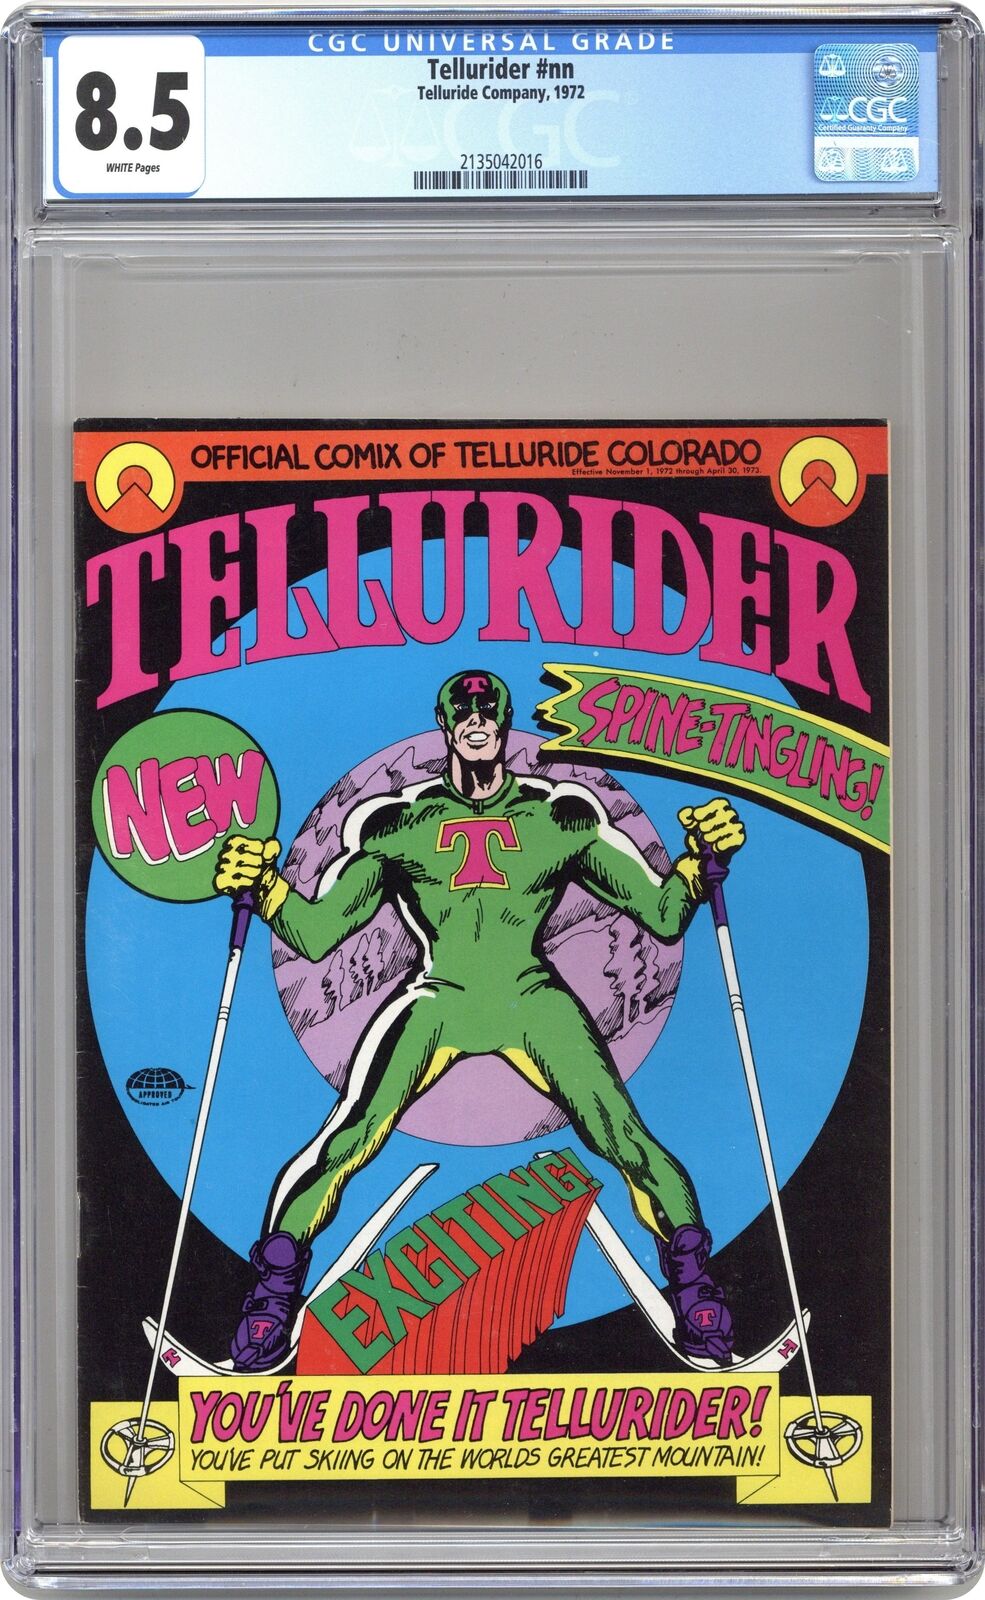 Tellurider #1 CGC 8.5 1972 2135042016